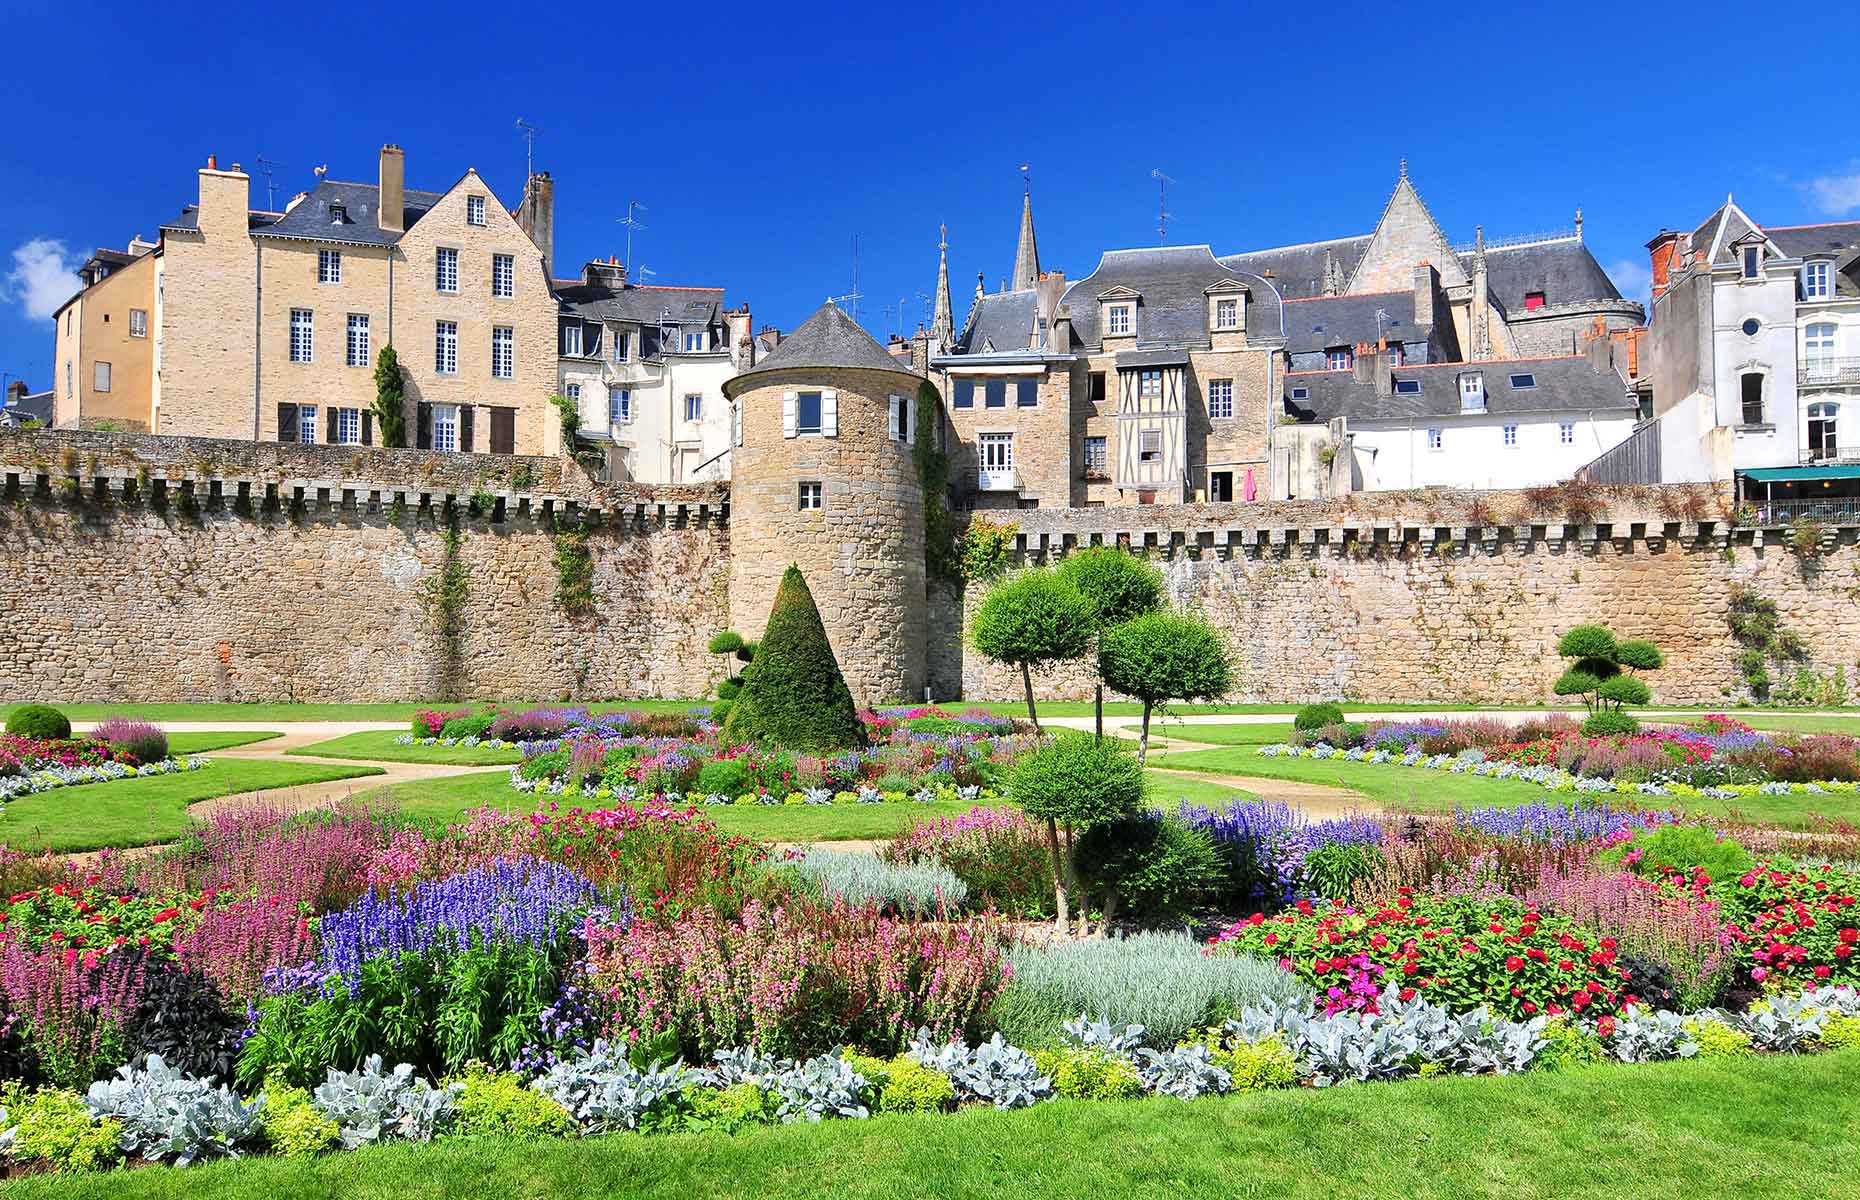 Vannes, Brittany, France (Image: Cezary Wojtkowski/Shutterstock)